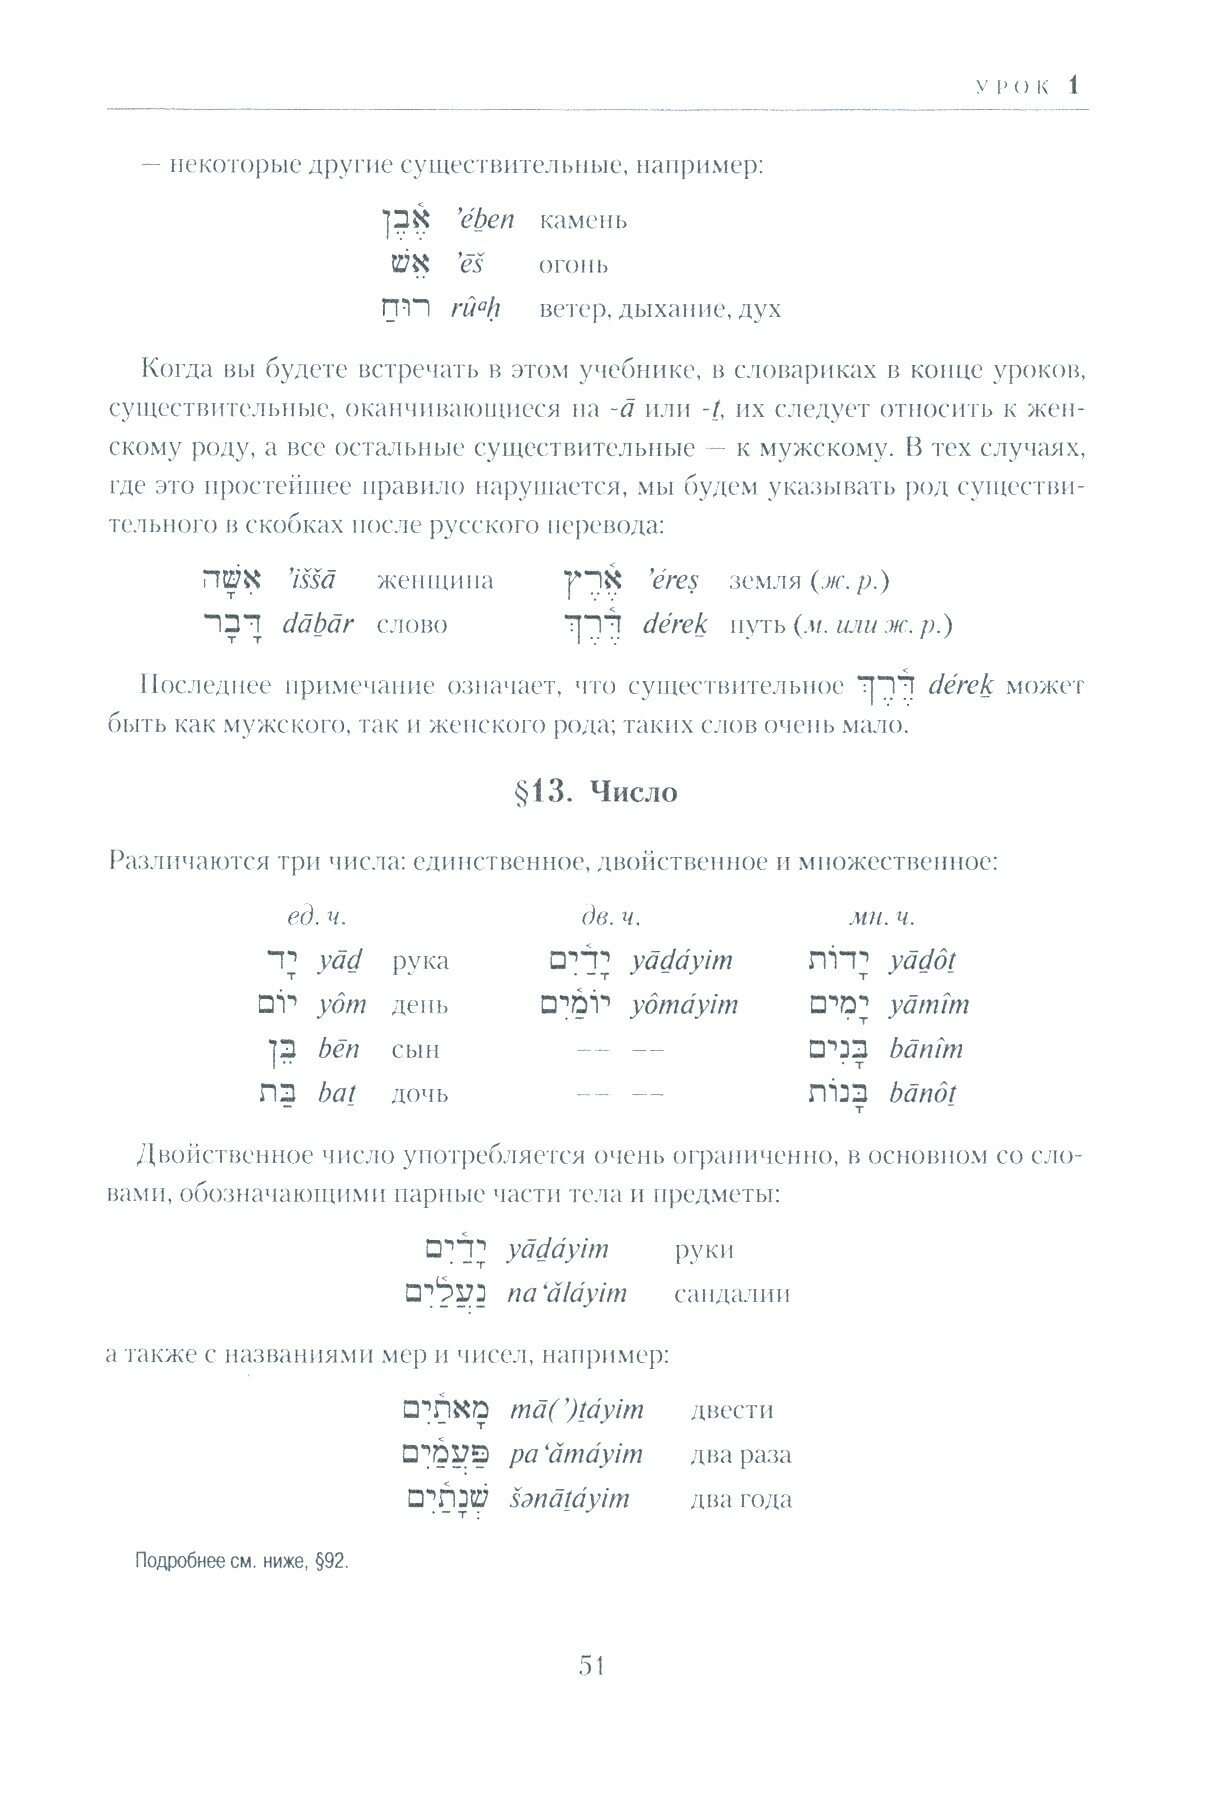 Учебник древне-еврейского языка - фото №5